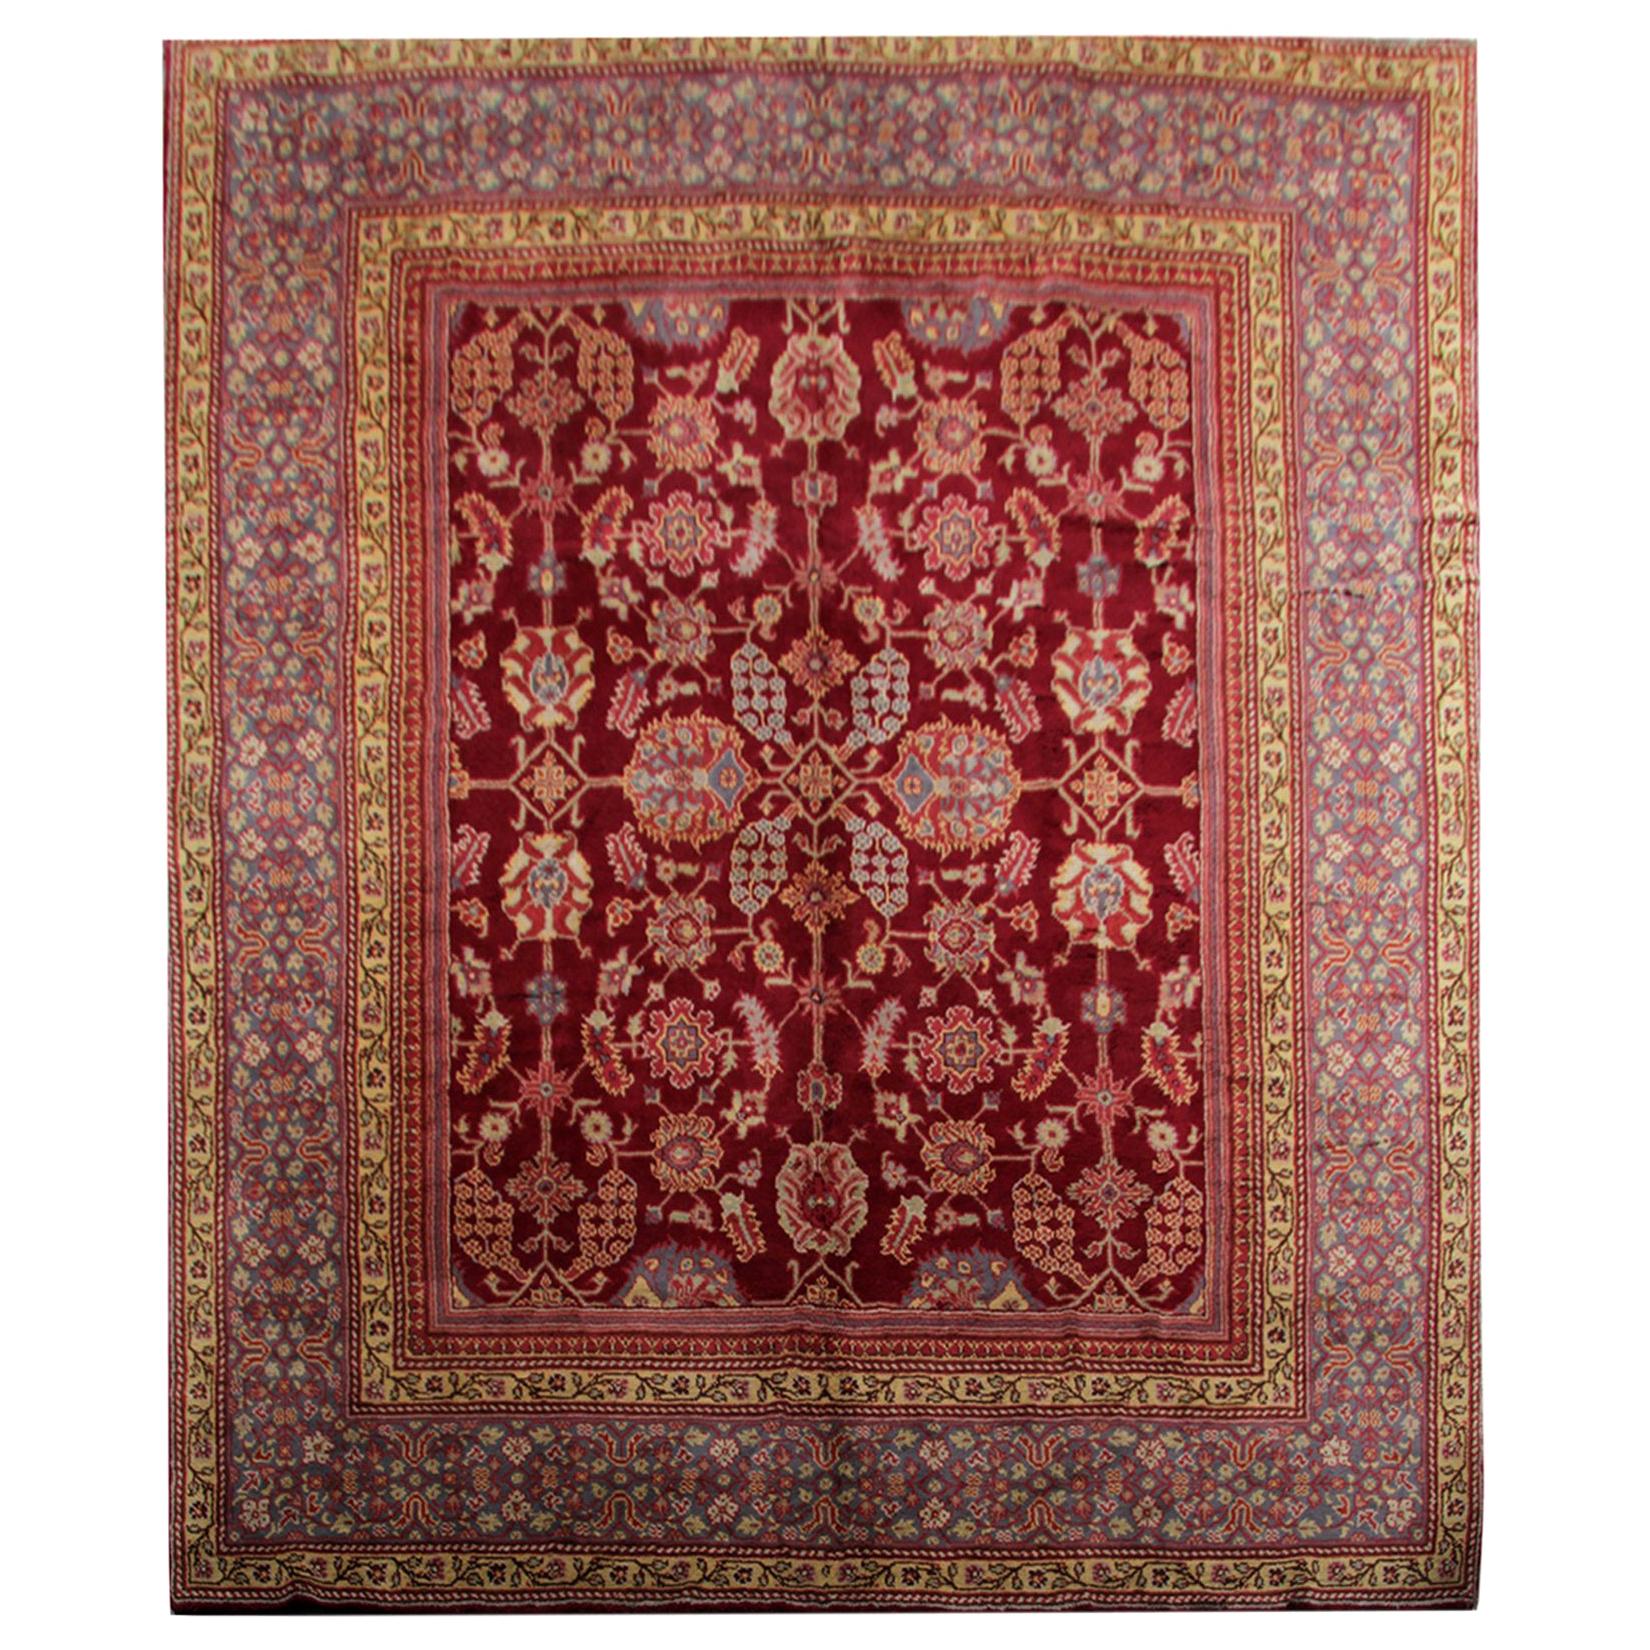 Handgefertigter handgefertigter Teppich, seltene antike Teppiche, englischer Axminster Art Deco Teppich